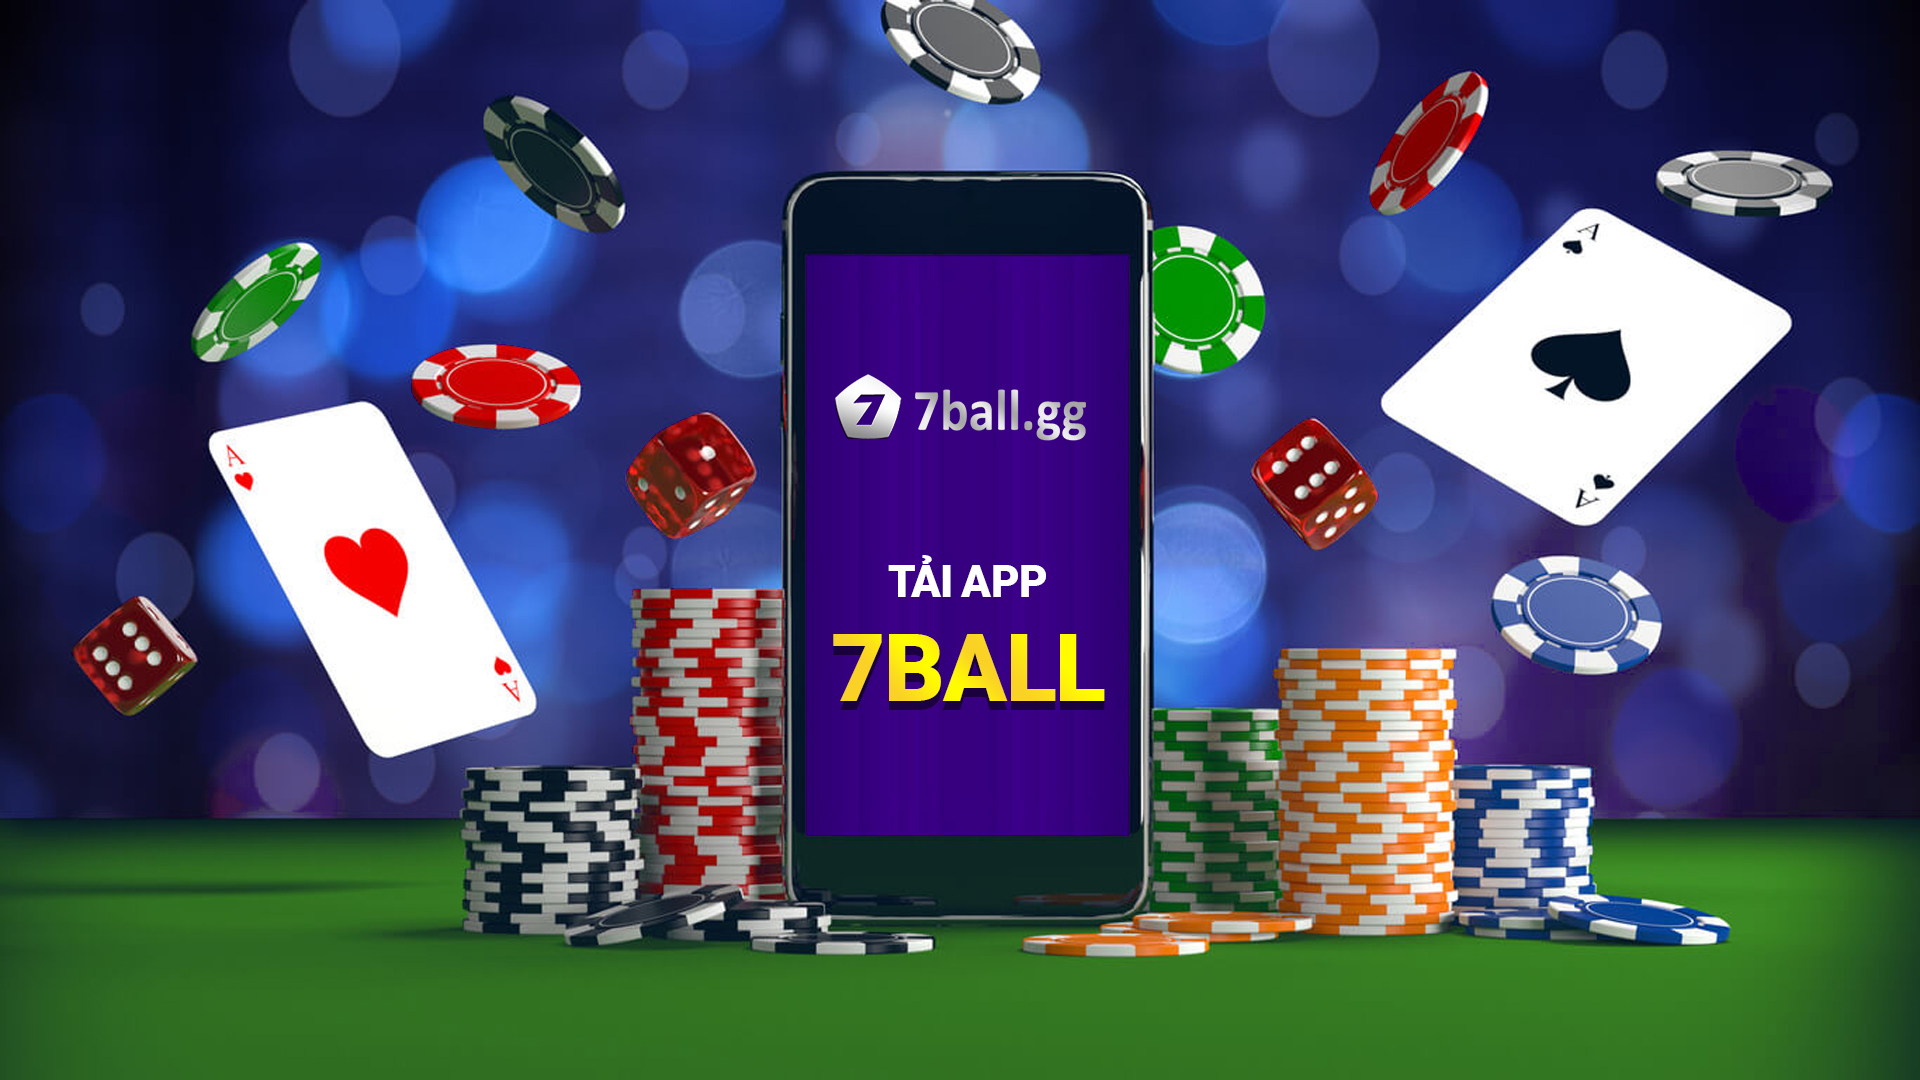 Tải app 7ball game cờ bạc nhà cái 7ball.gg casino chơi online